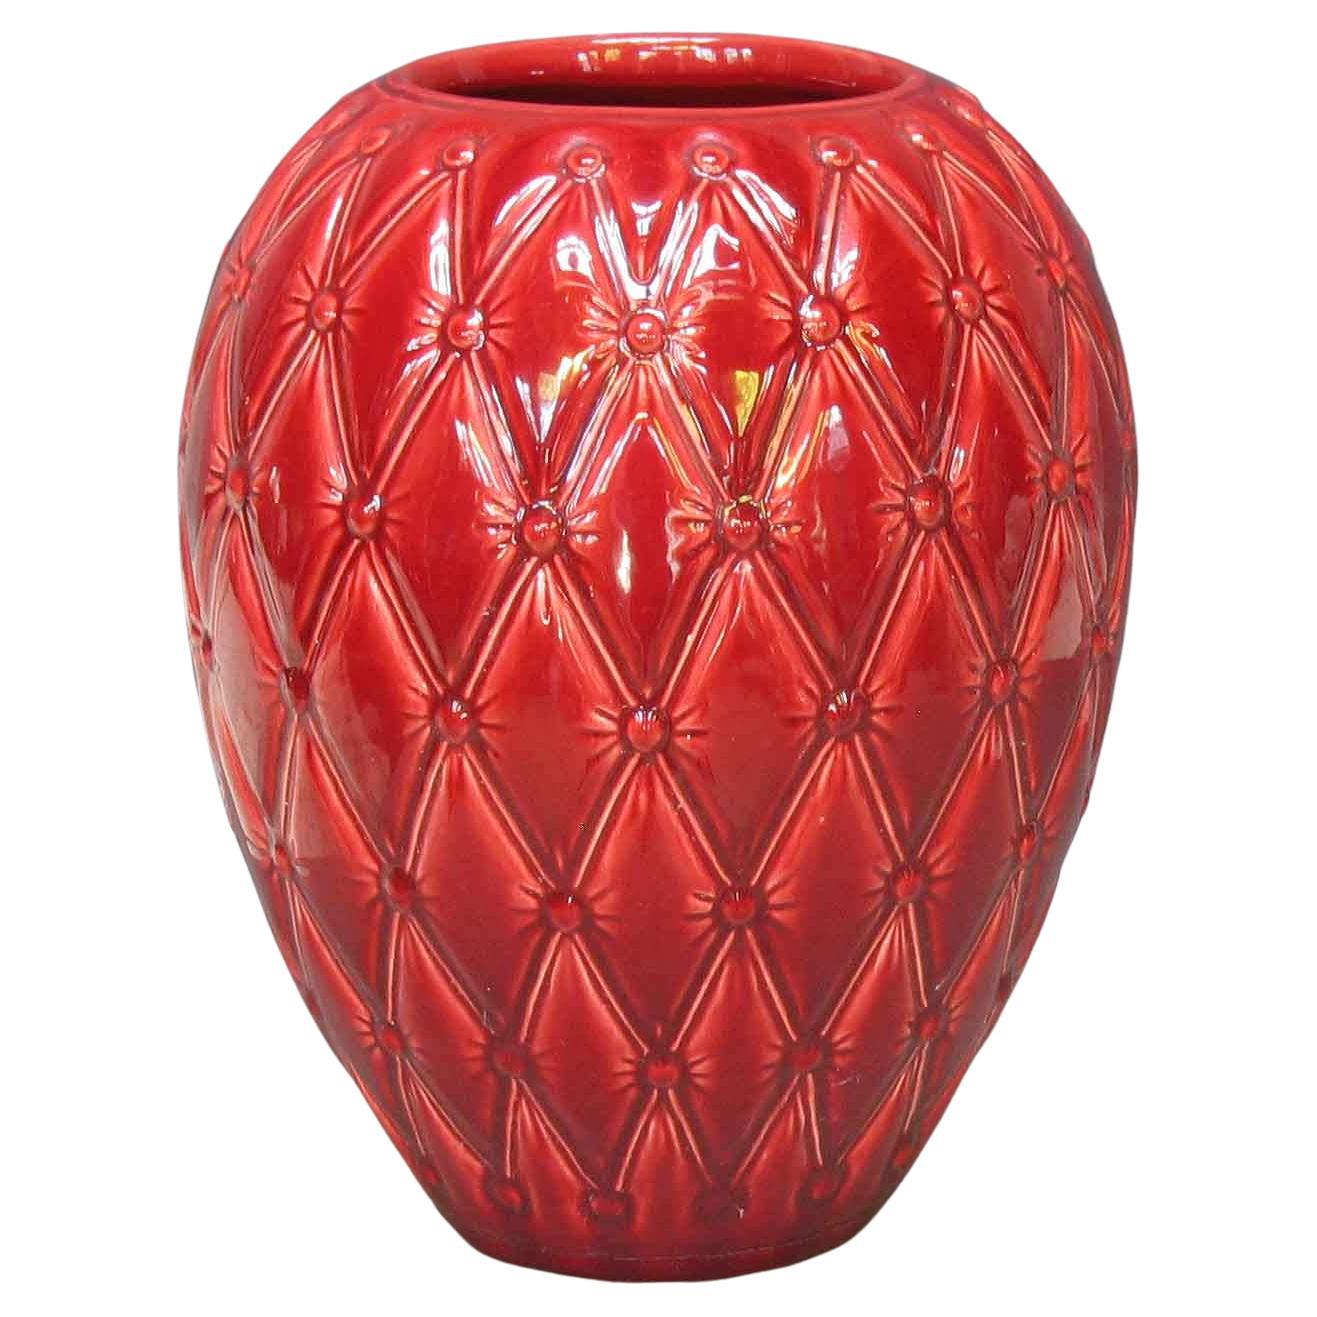 Grand vase en poterie de Studio Pottery à glaçure rouge